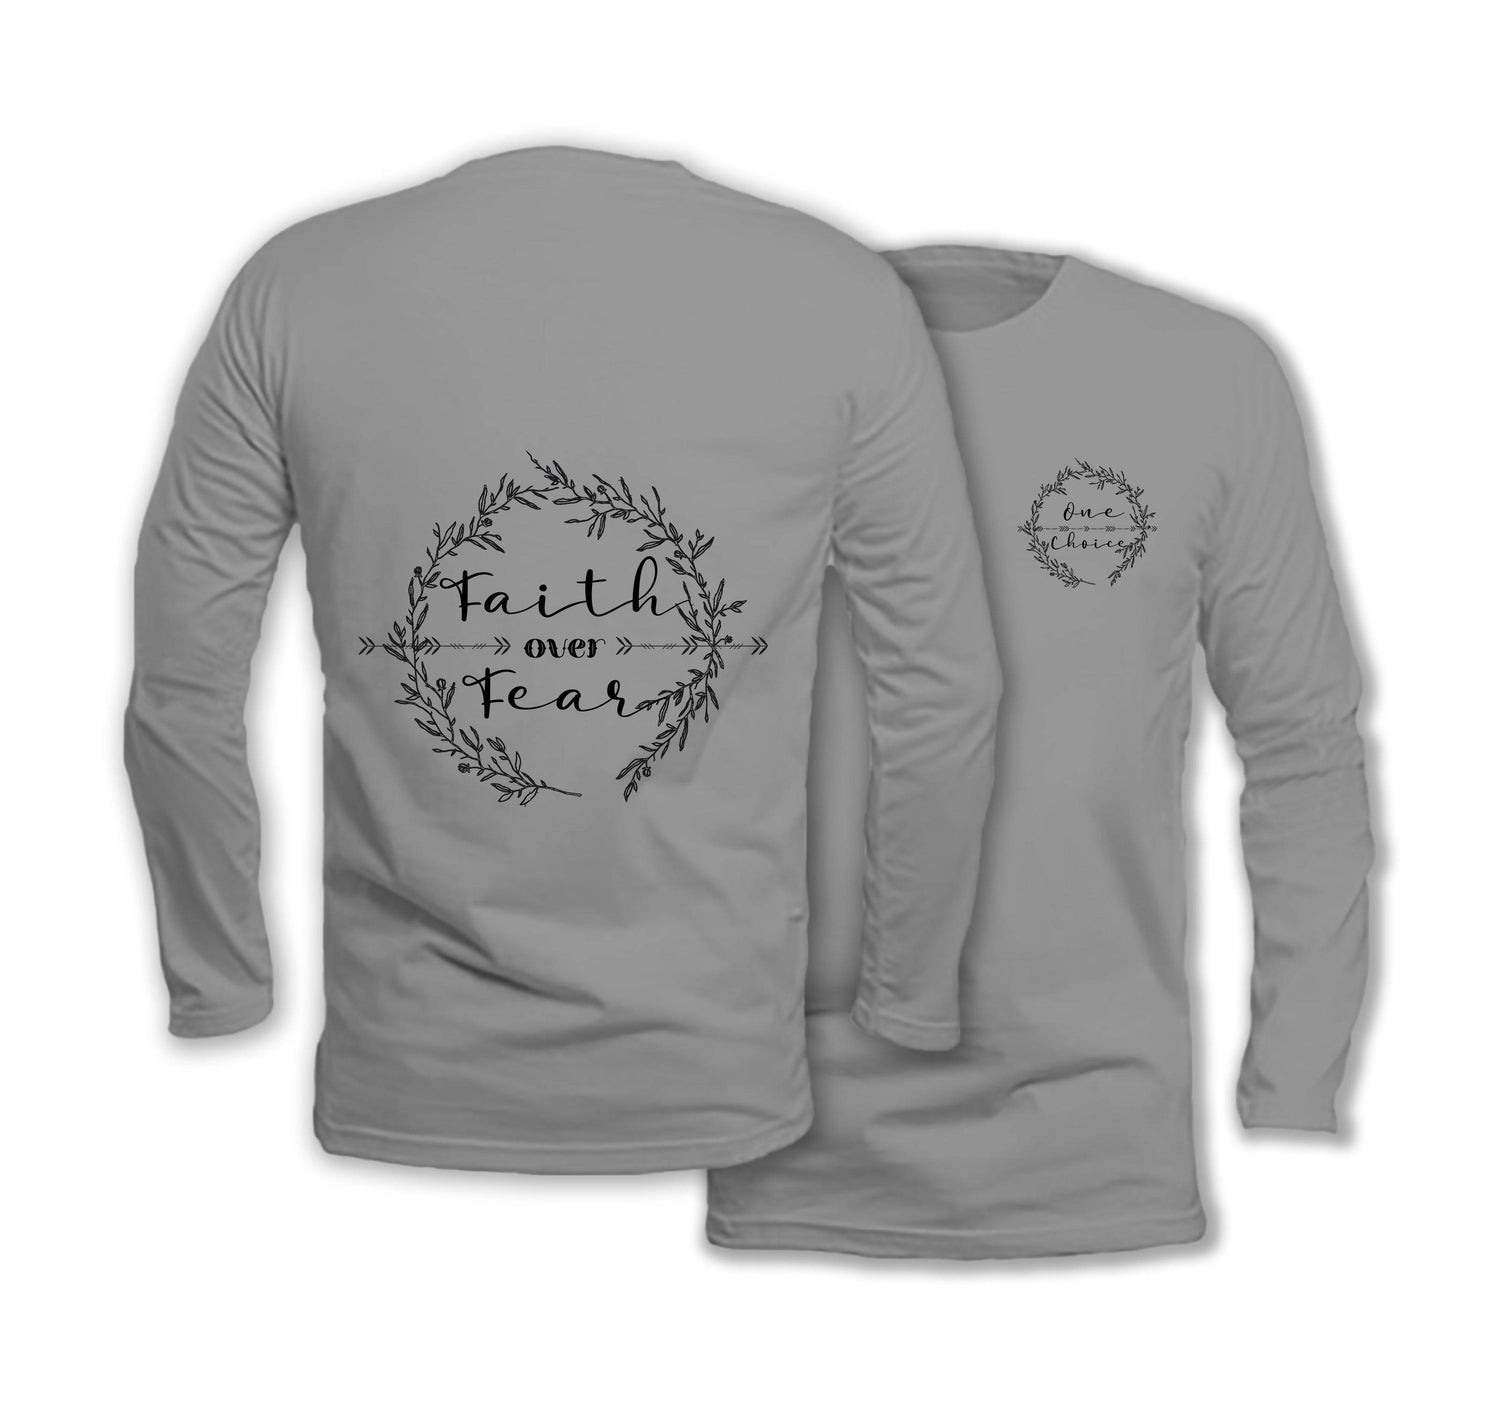 Faith Over Fear - Long Sleeve Organic Cotton T-Shirt - One Choice Apparel